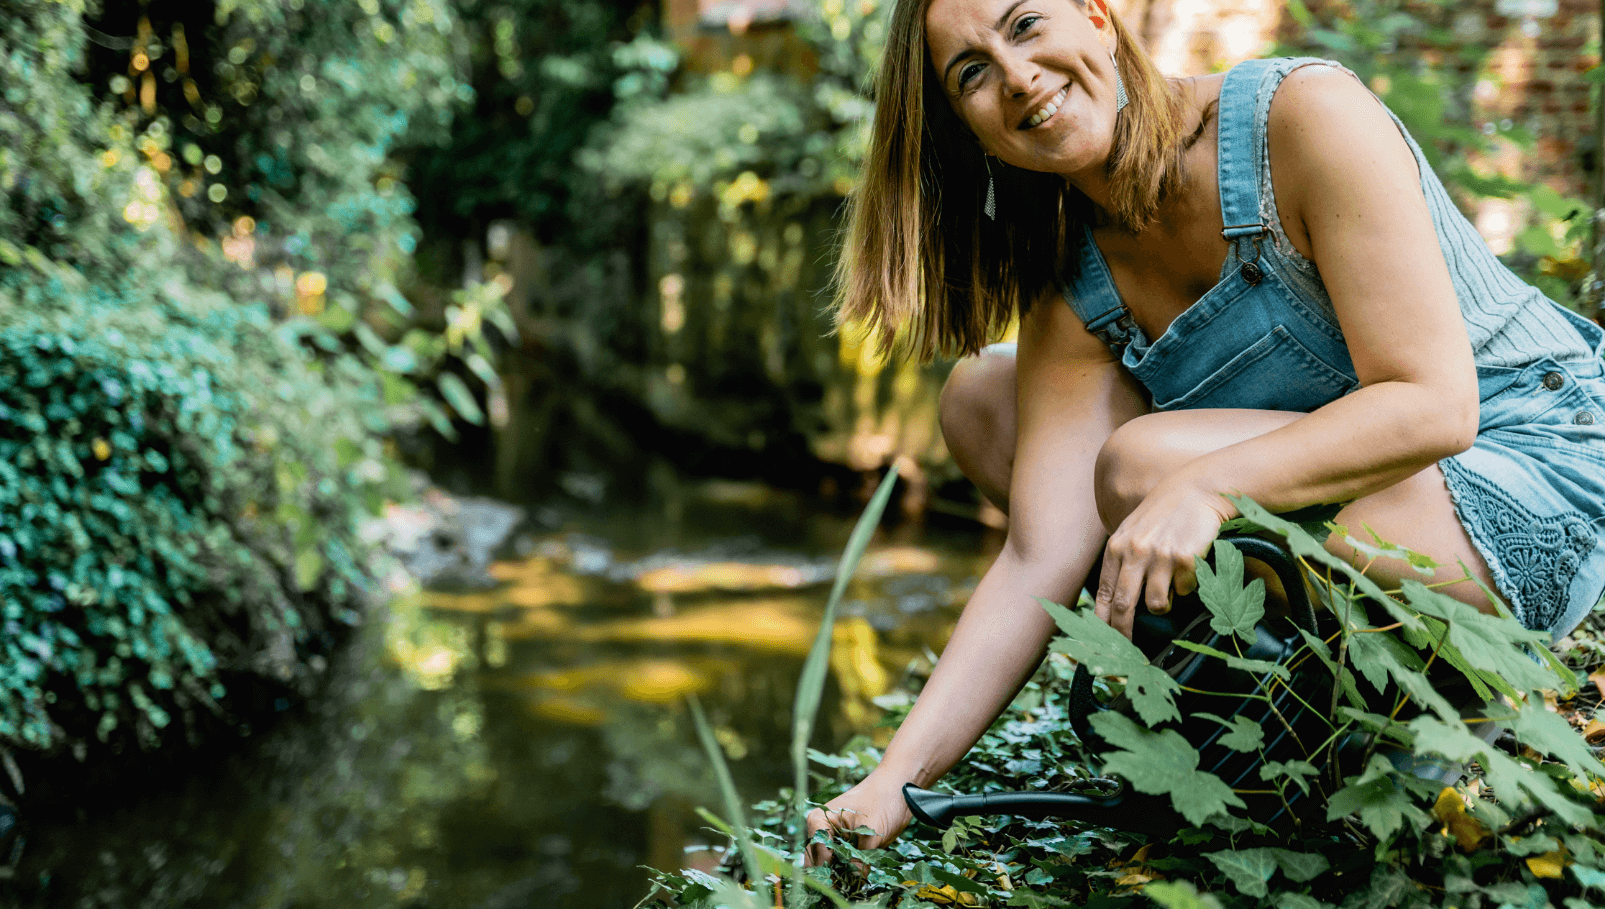 Een vrouw in een denim tuinbroek zittend naast een kabbelende beek in een weelderige tuin. Ze glimlacht en lijkt te genieten van de natuur terwijl ze zich over de planten buigt.